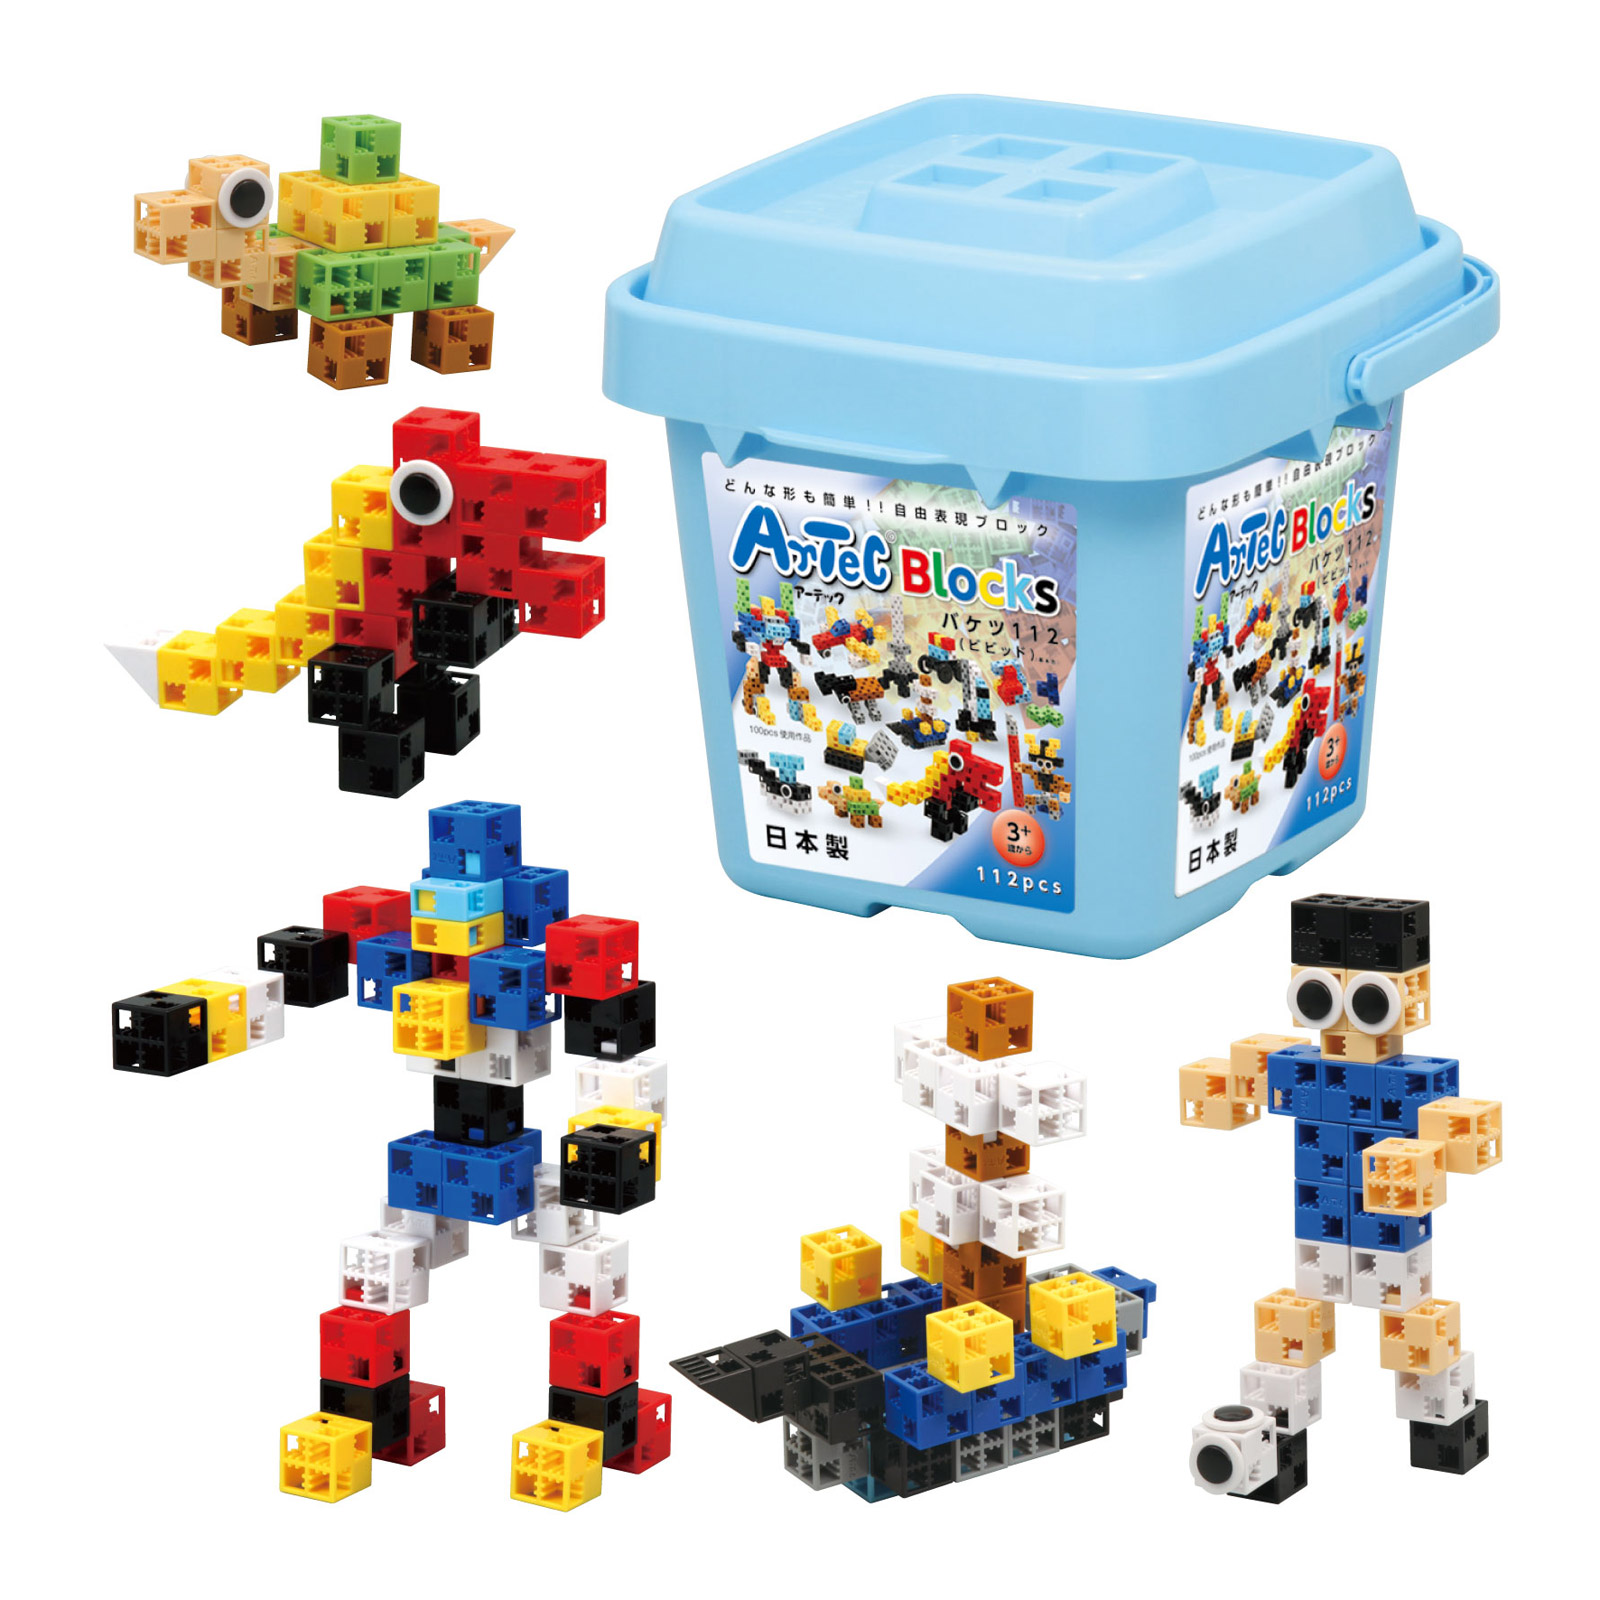 ブロック おもちゃ アーテックブロック バケツ [ビビッド] 基本色 Artecブロック 基本セット ブロック 日本製 ゲーム 教育  レゴ・レゴブロックのように自由に遊べます 室内 | ルーペスタジオ